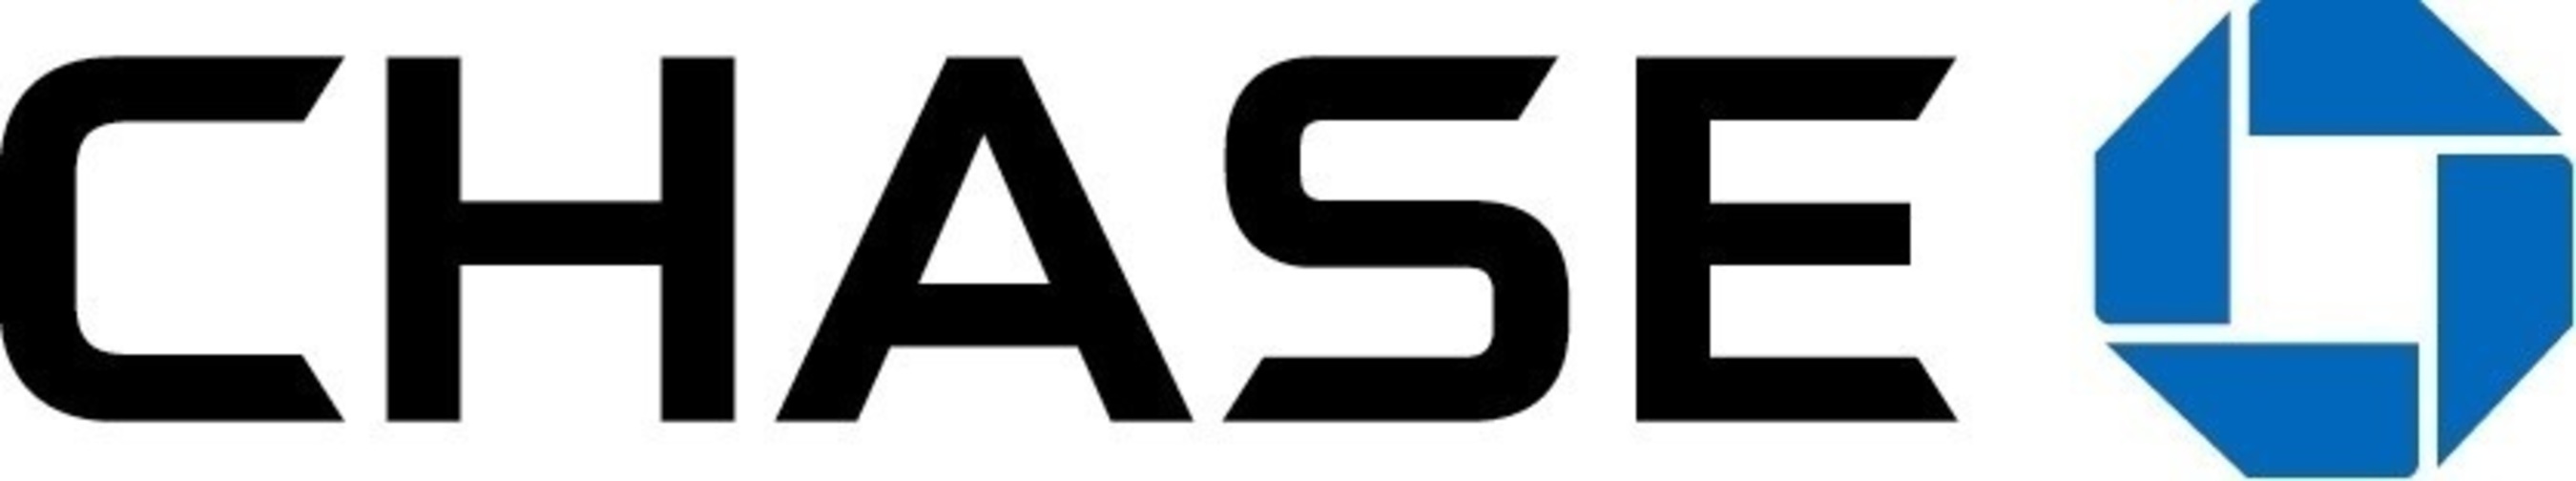 Chase logo (PRNewsFoto/Chase)